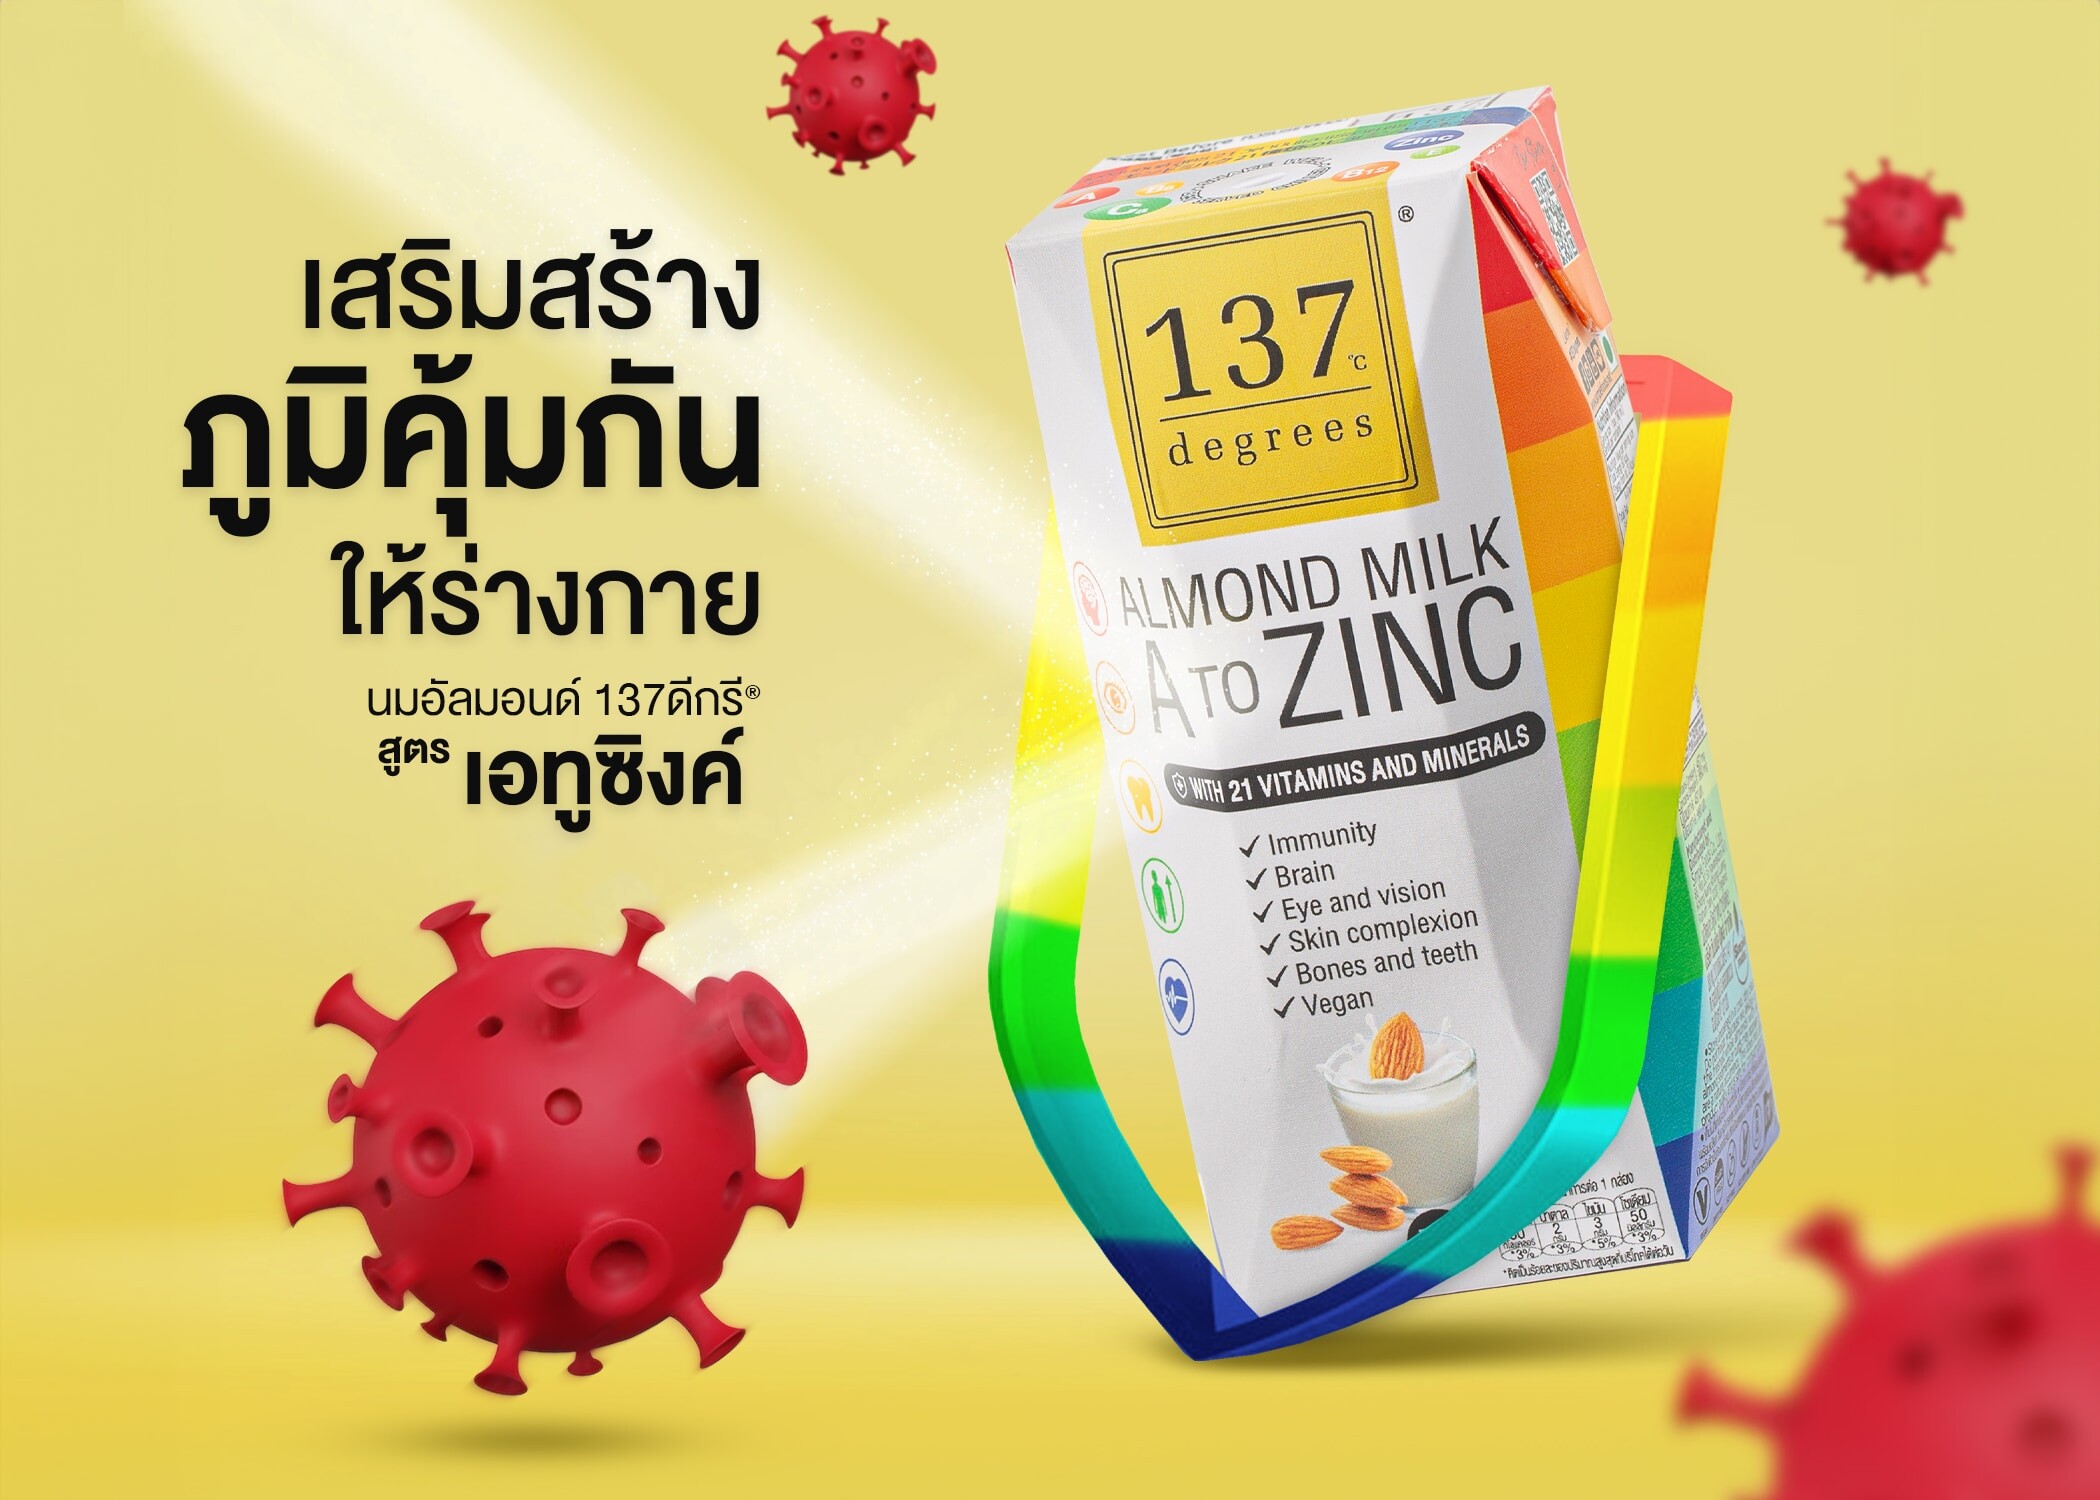 สถิติคนไทยขาด "วิตามินดี" สูง "137 ดีกรี(R)" ชี้ แค่โดนแดดไม่เพียงพอ แนะนมอัลมอนด์สูตร A to Zinc ตัวช่วยเสริม